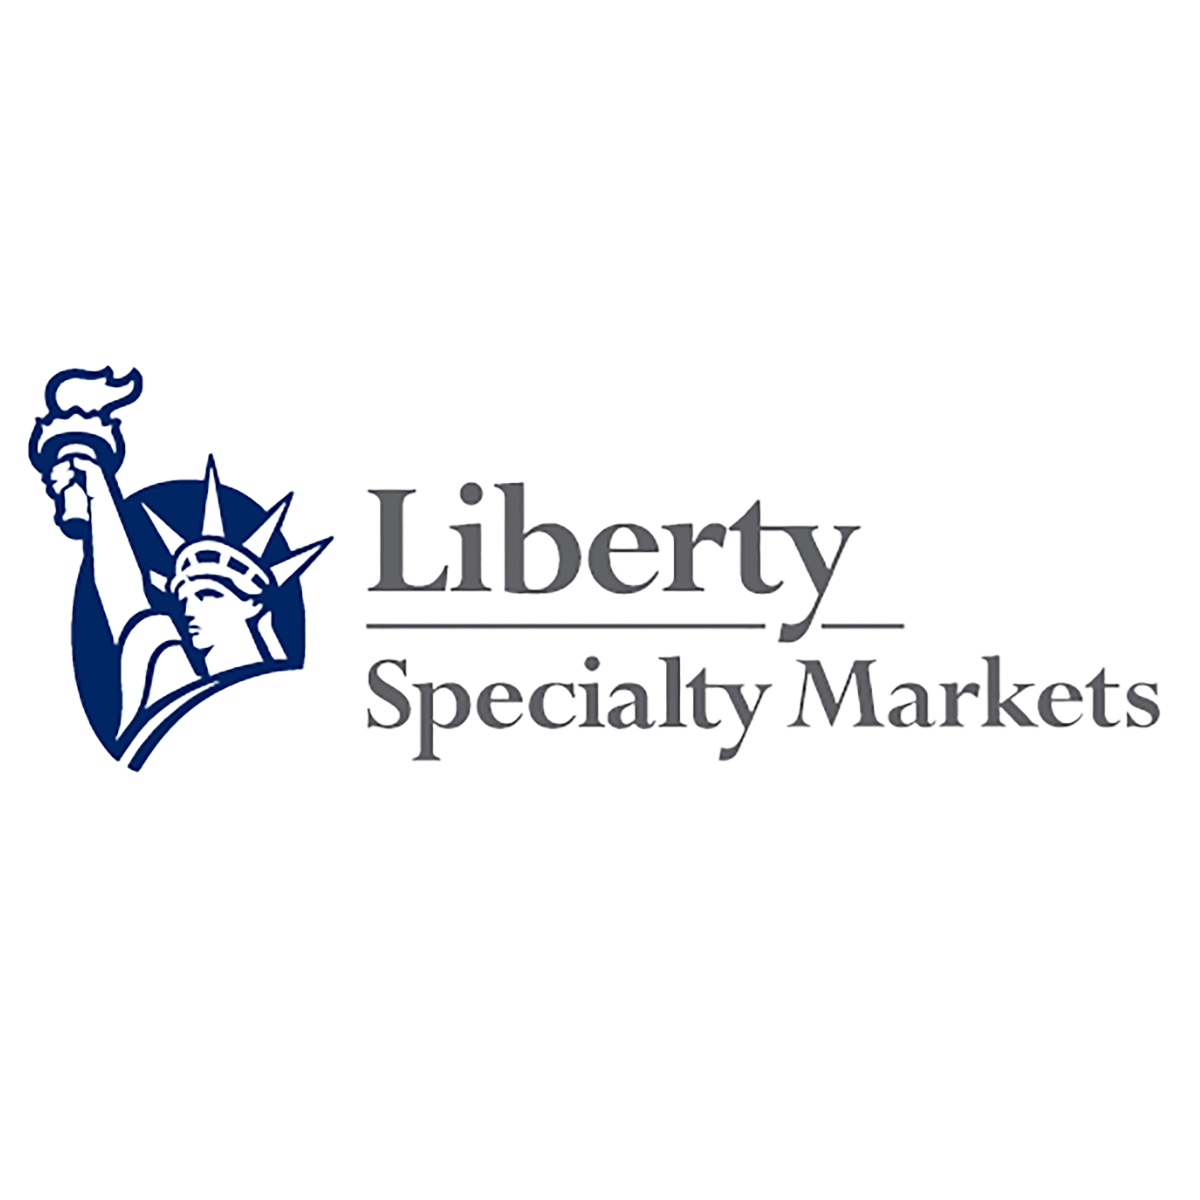 Liberty Specialty Markets logo.